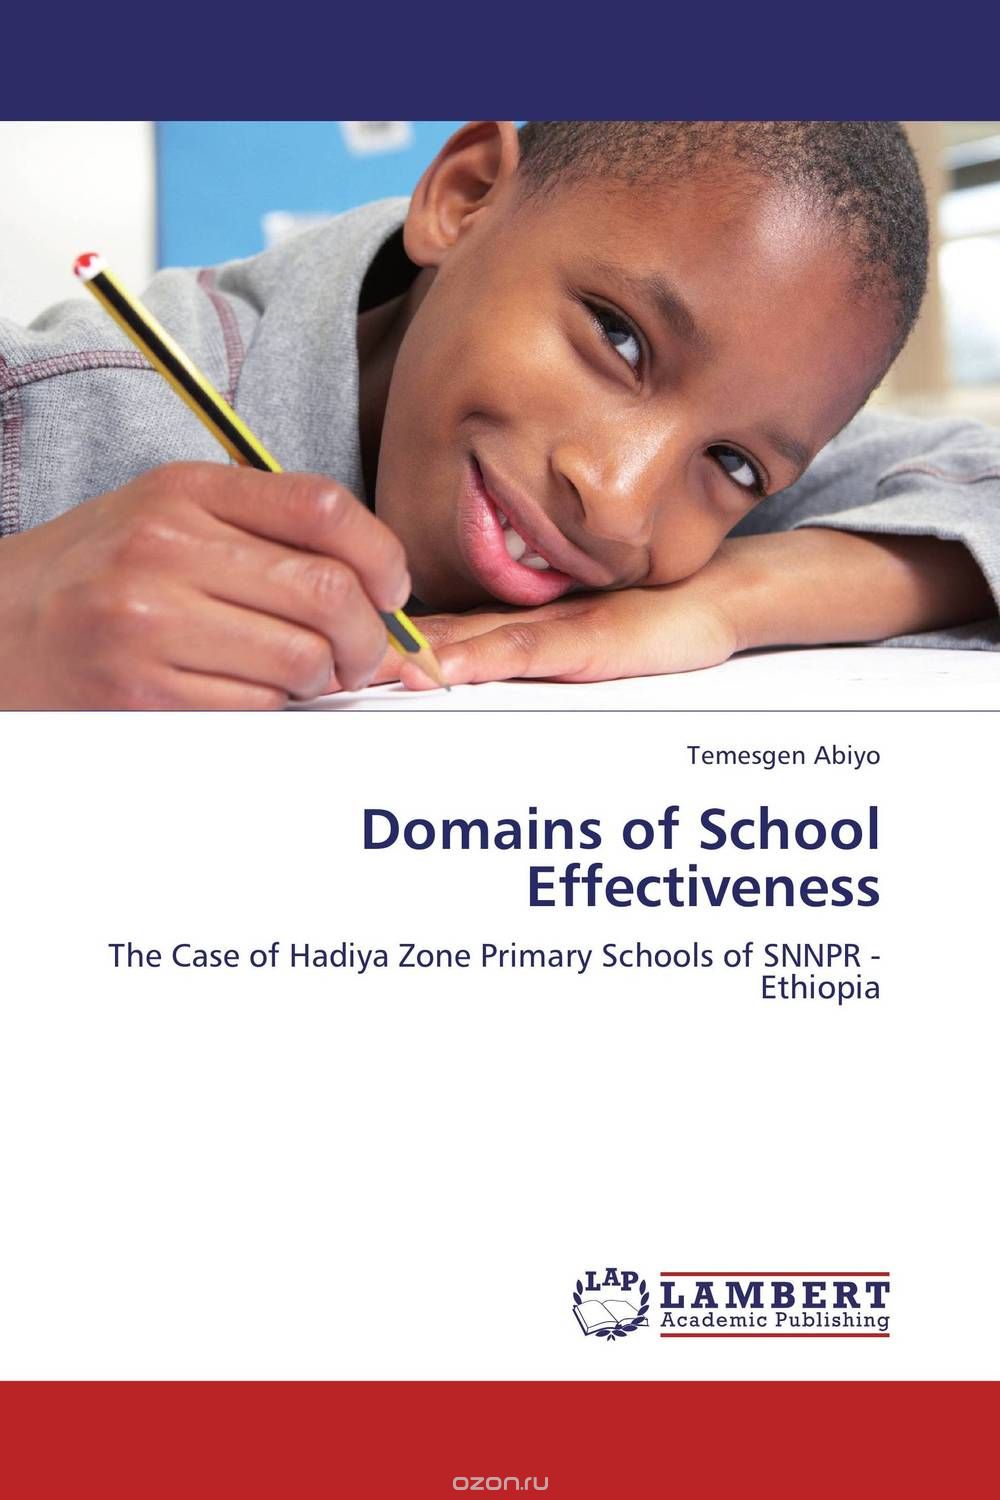 Скачать книгу "Domains of School Effectiveness"